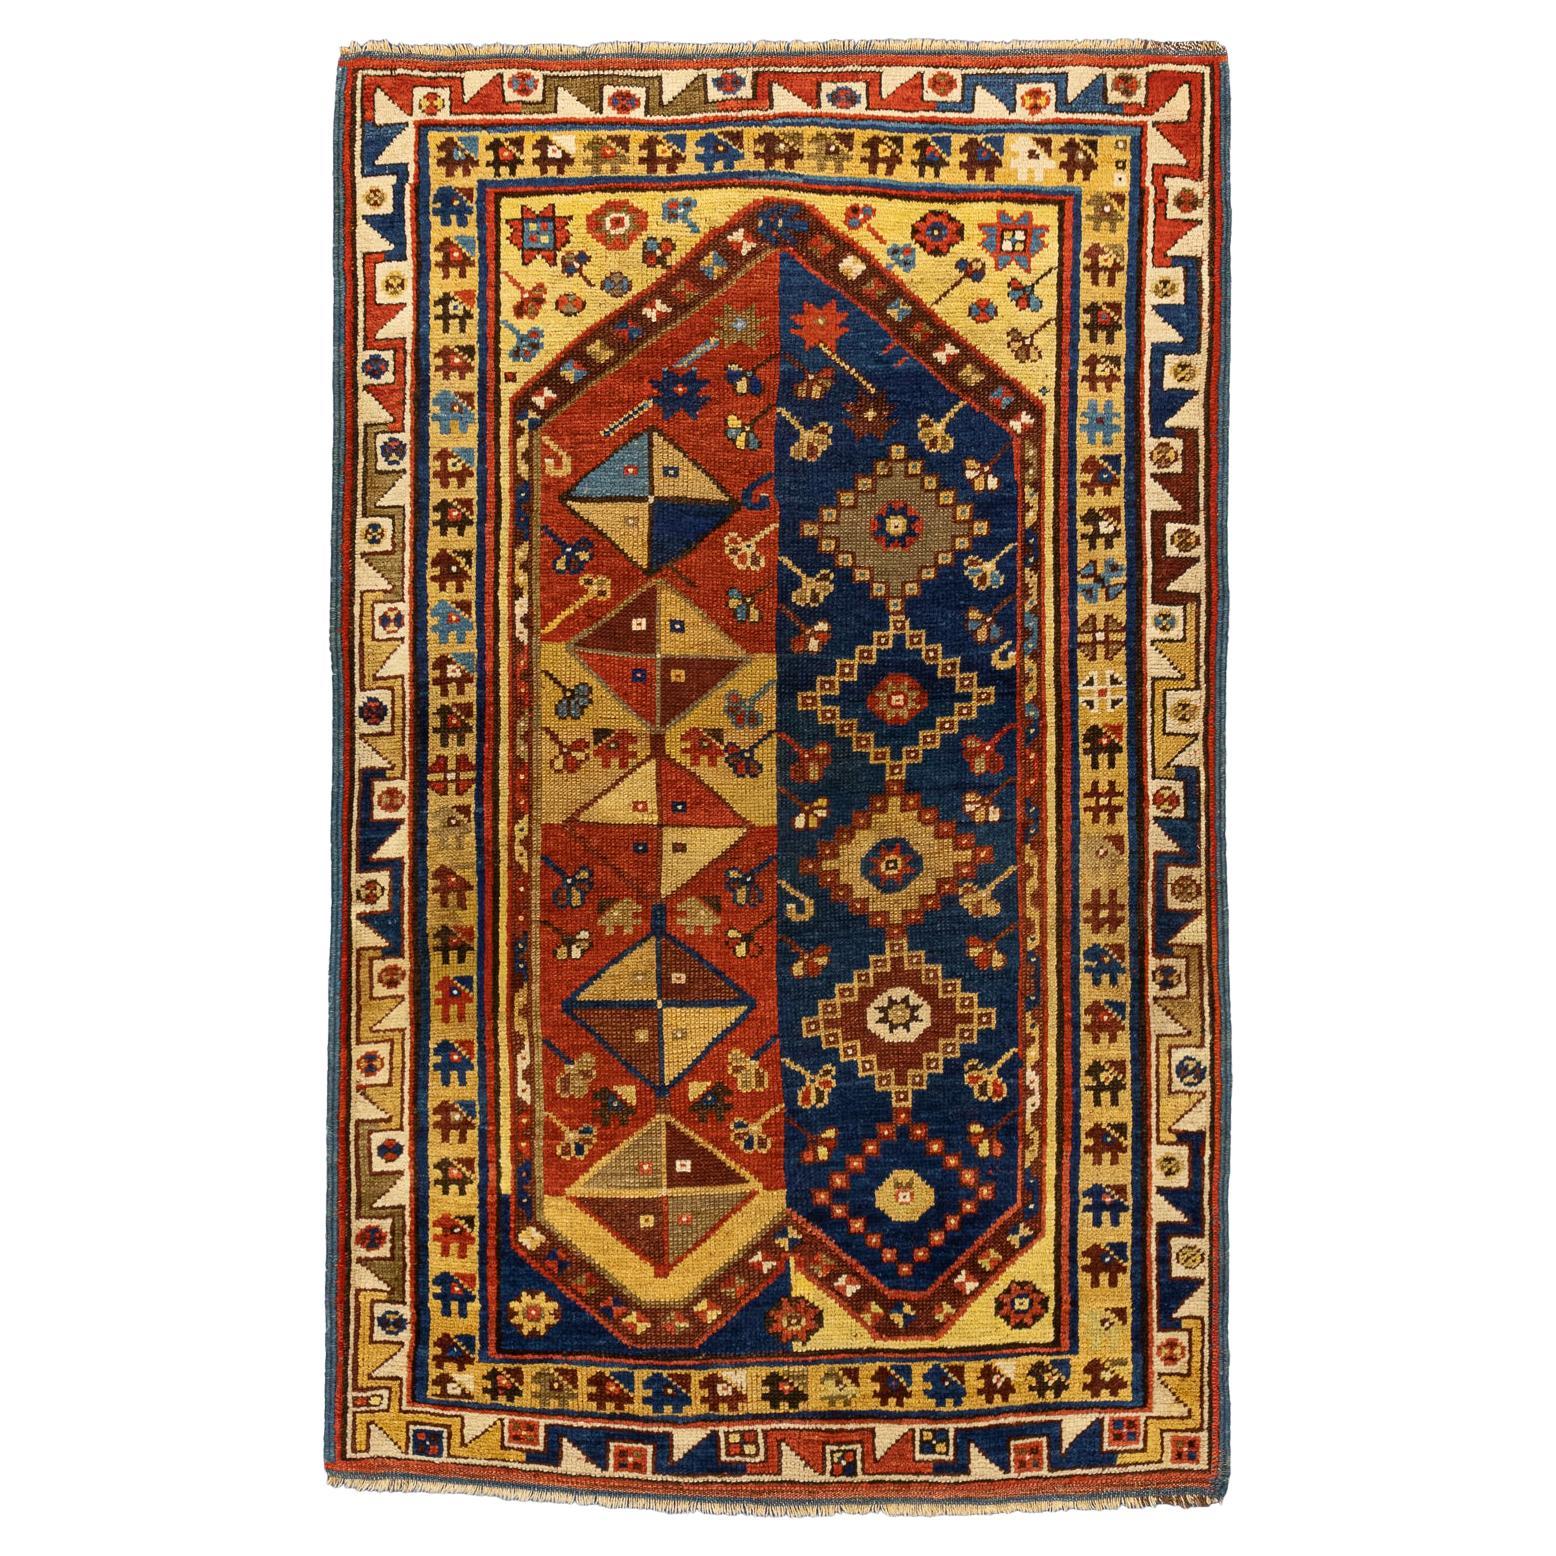 Antique Turkish Megri “Z” Motifs Wool Rug, Mid-19th Century